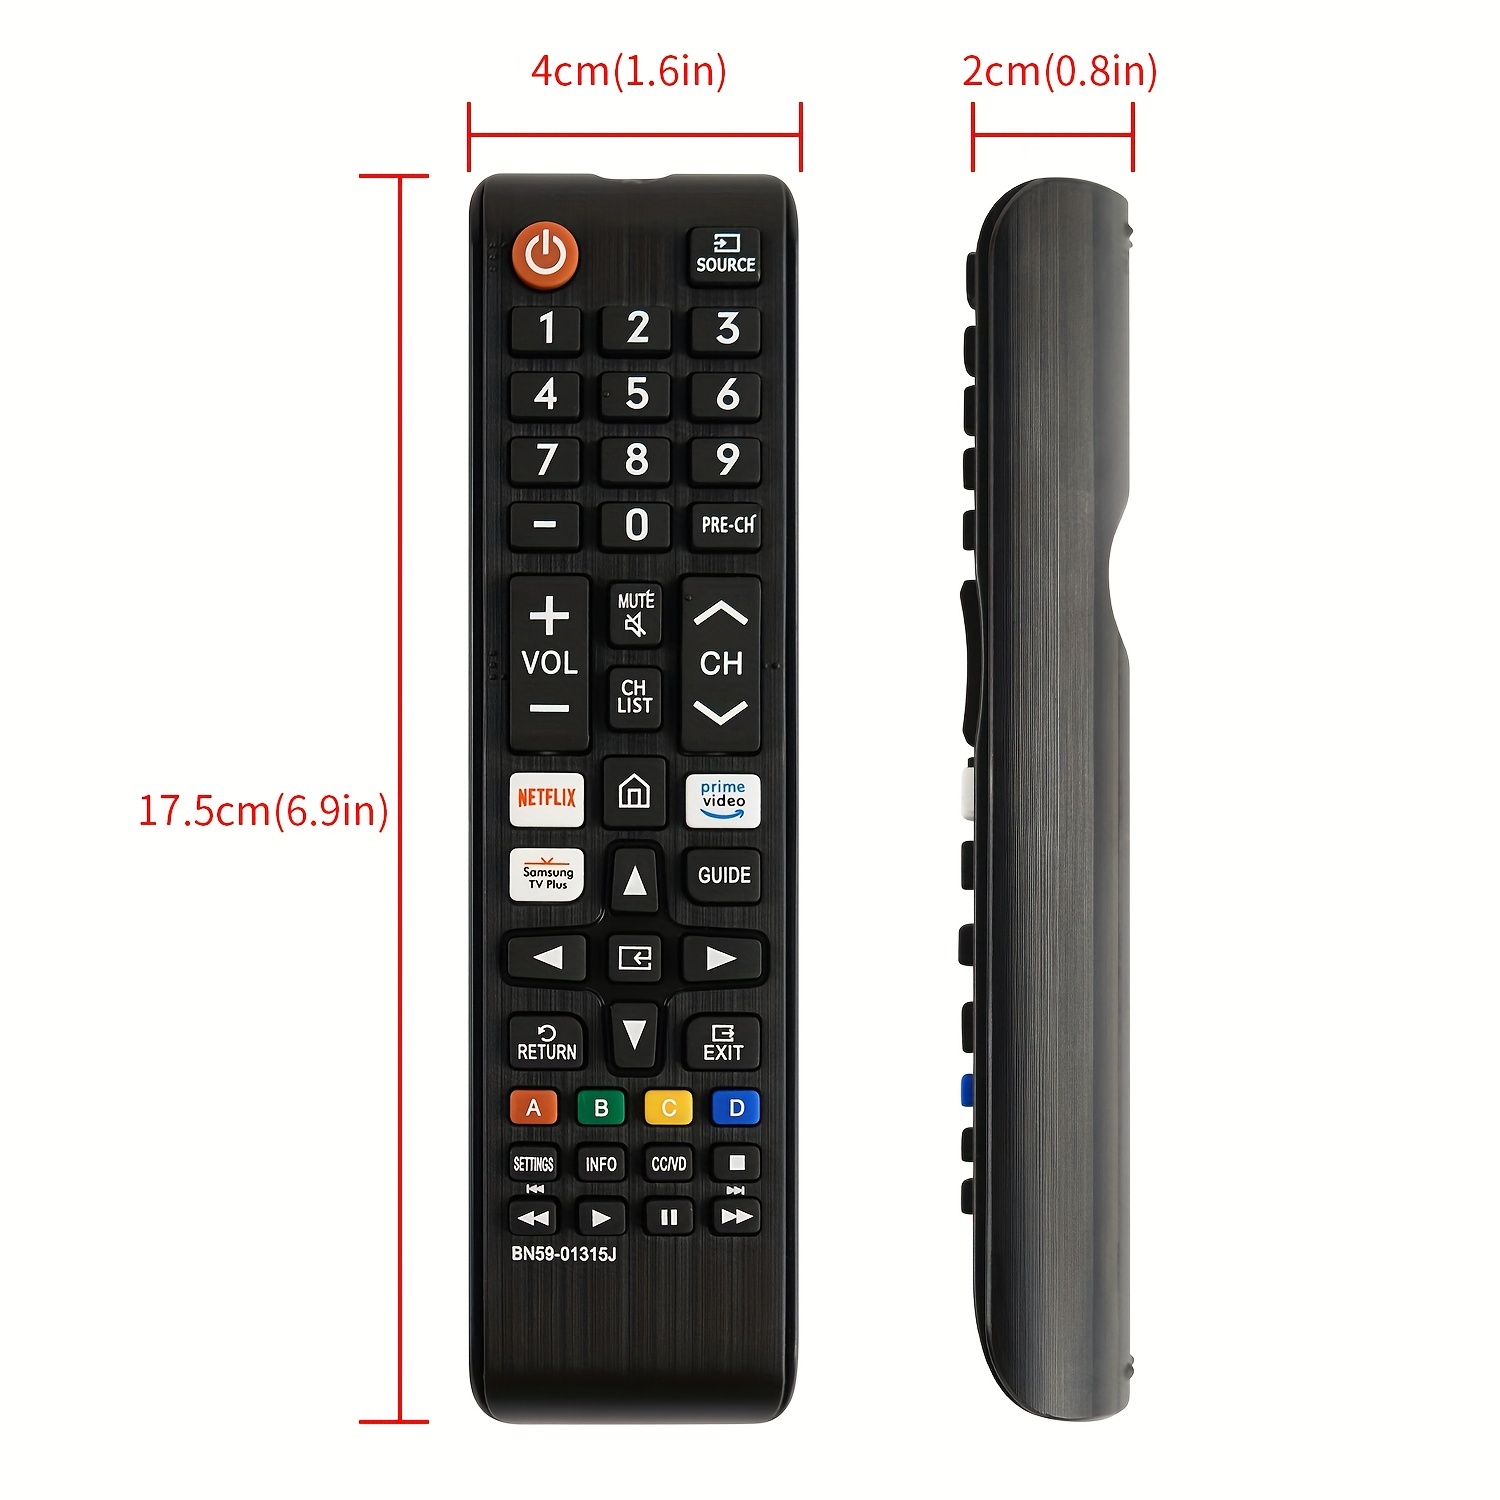 Acheter Nouvelle télécommande Bn59-01259D pour Samsung Smart Tv